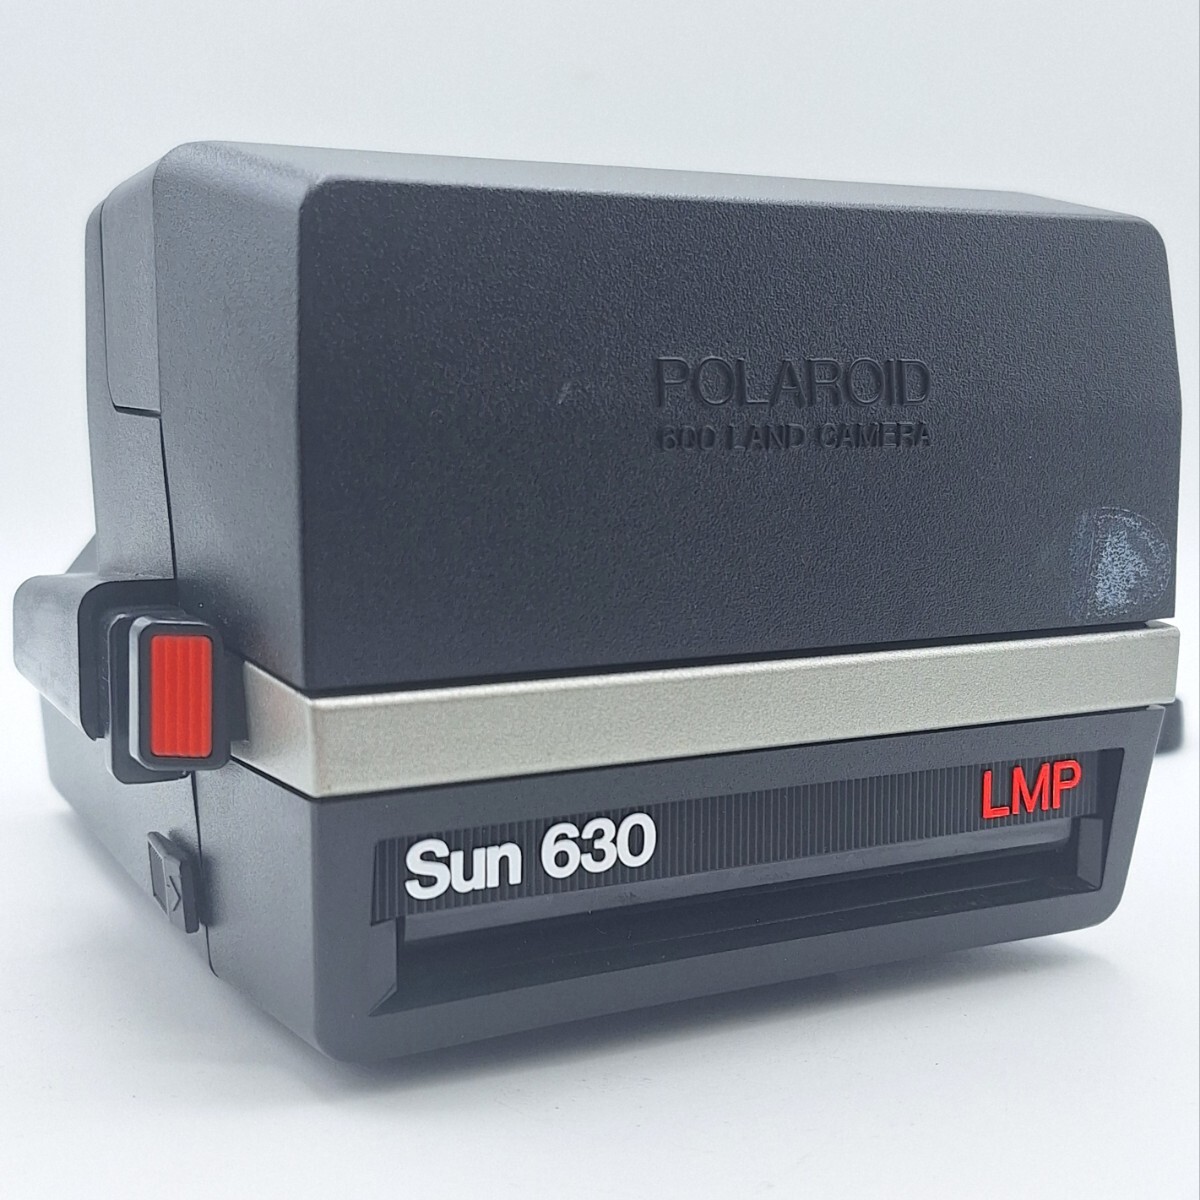 POLAROID ポラロイド 600 LAND CAMERA ランドカメラ Sun630 LMP ポラロイドカメラ フィルム カメラ ブラック アンティーク レトロ WKの画像4